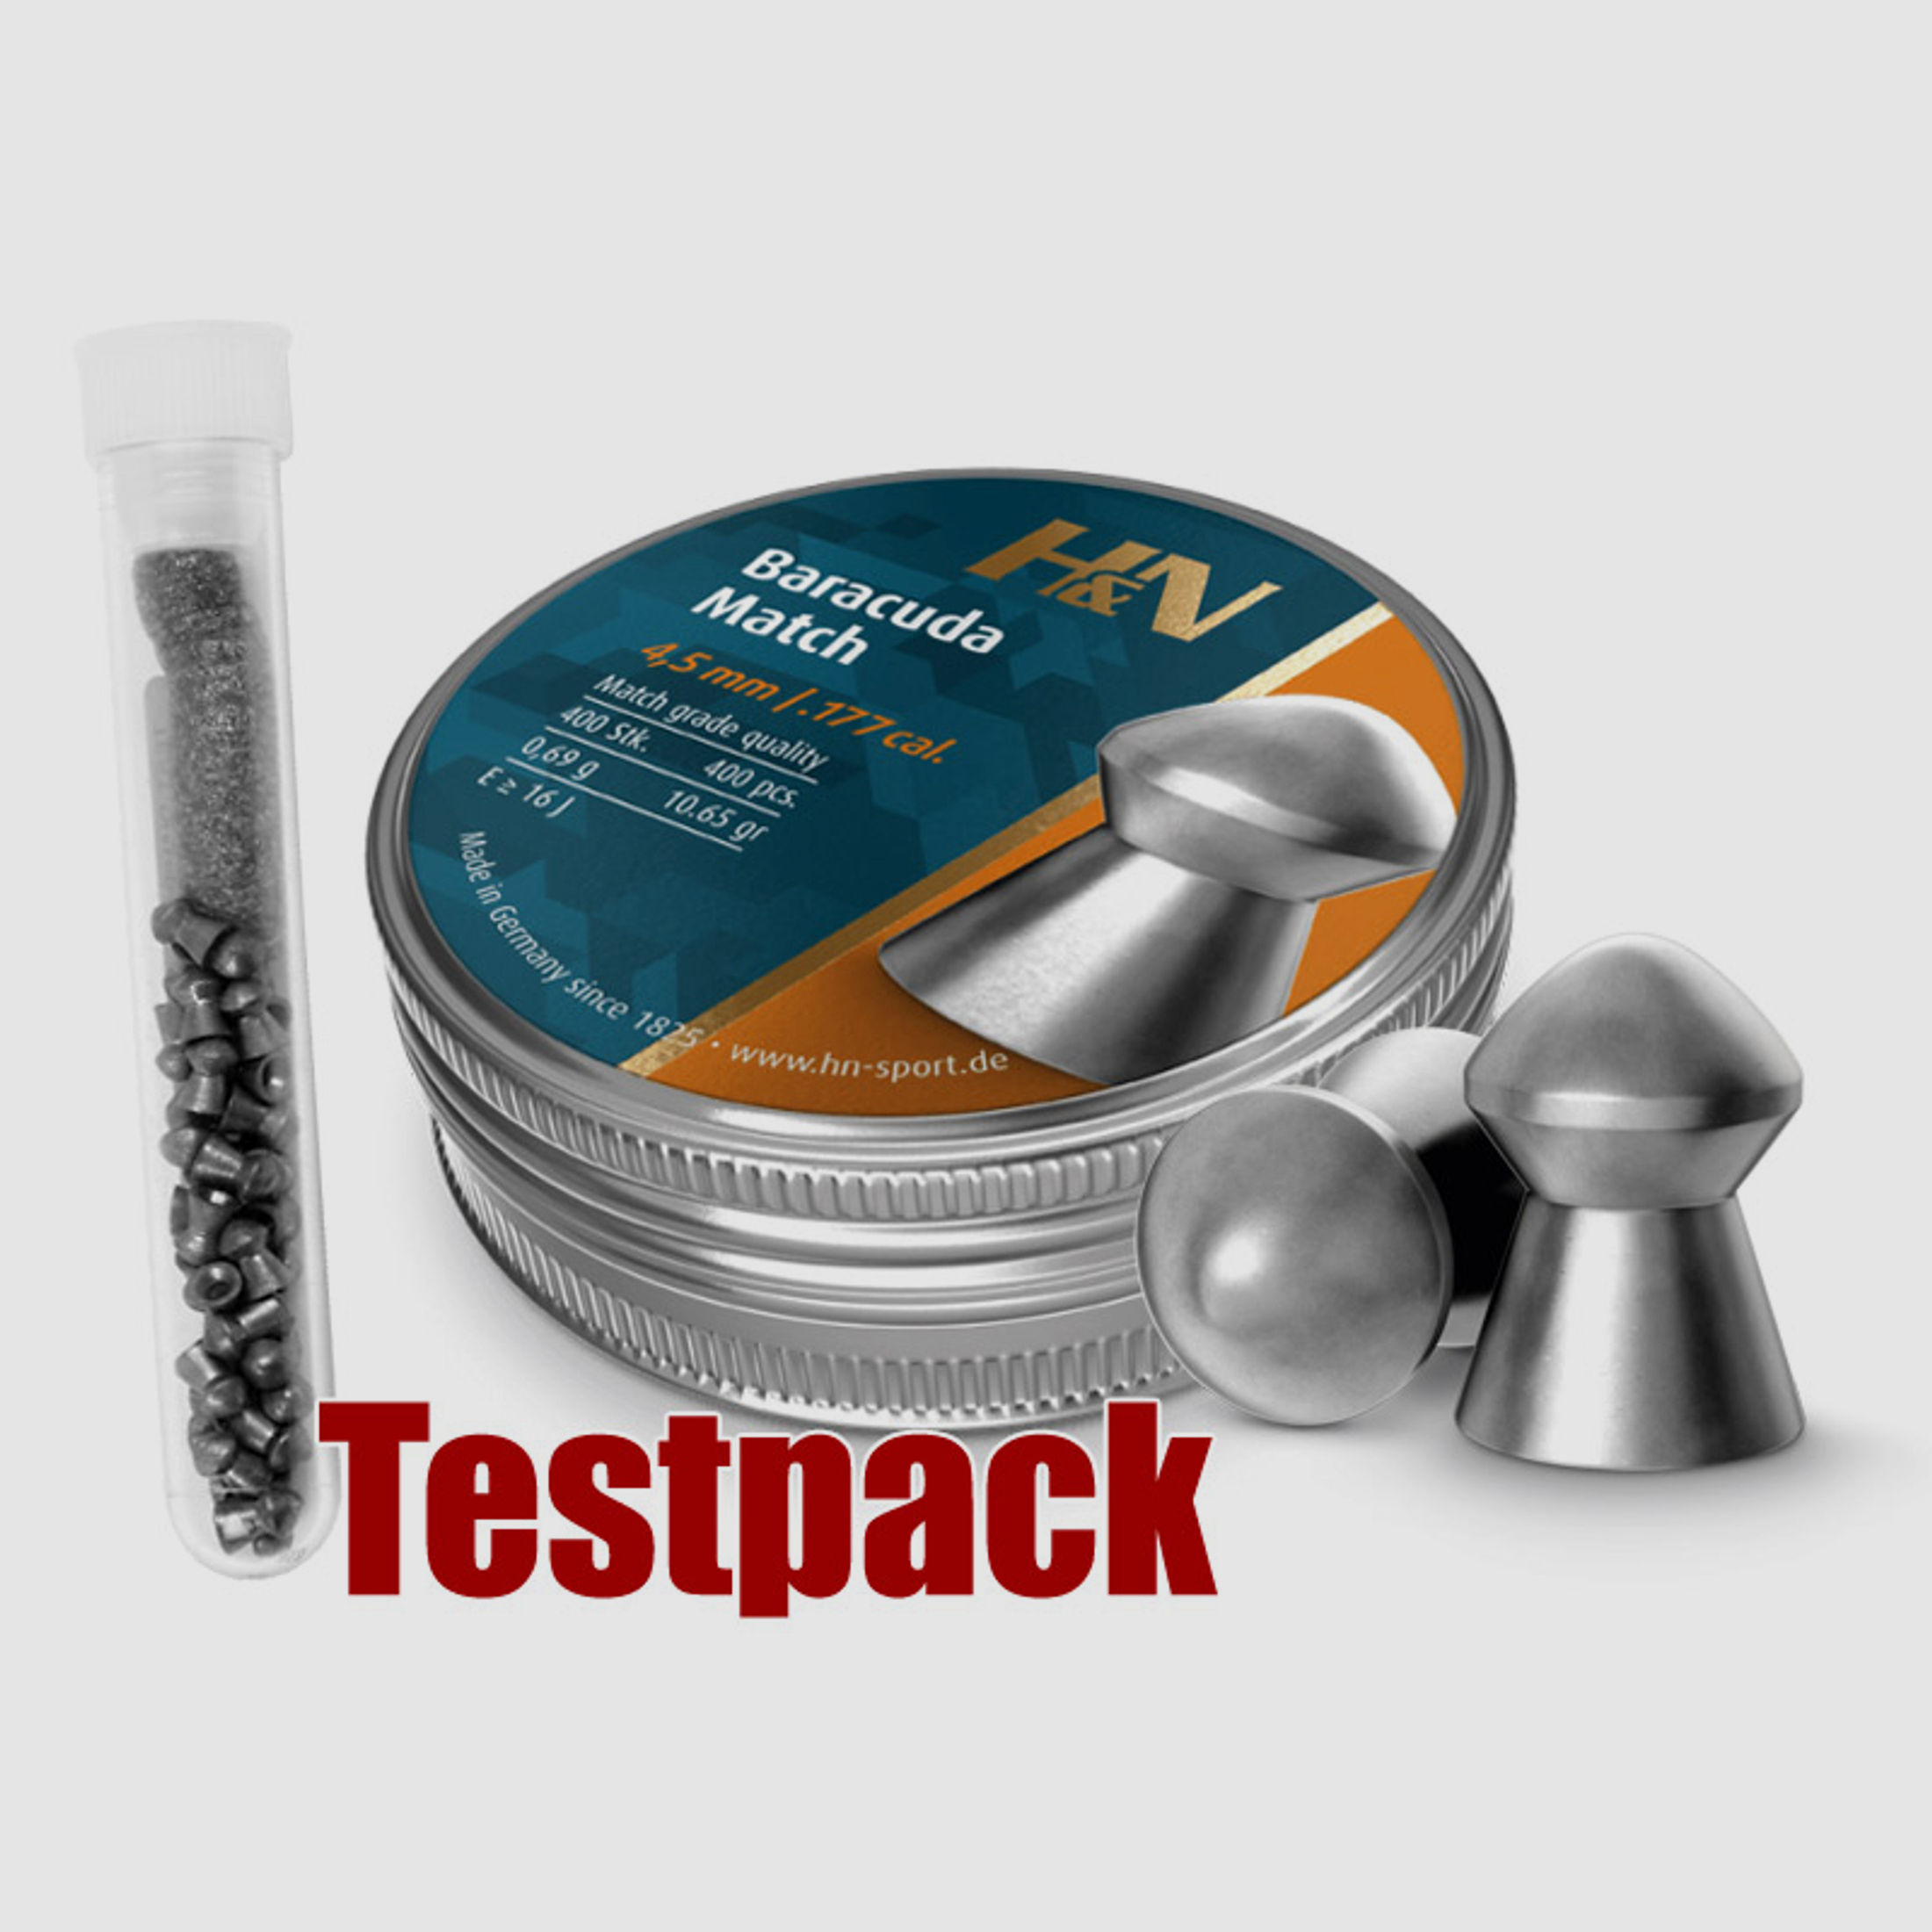 Testpack - H&N Baracuda Match Diabolo, Rundkopf, glatt, 0,69 g, Kaliber 4,50 mm, 40 StĂĽck